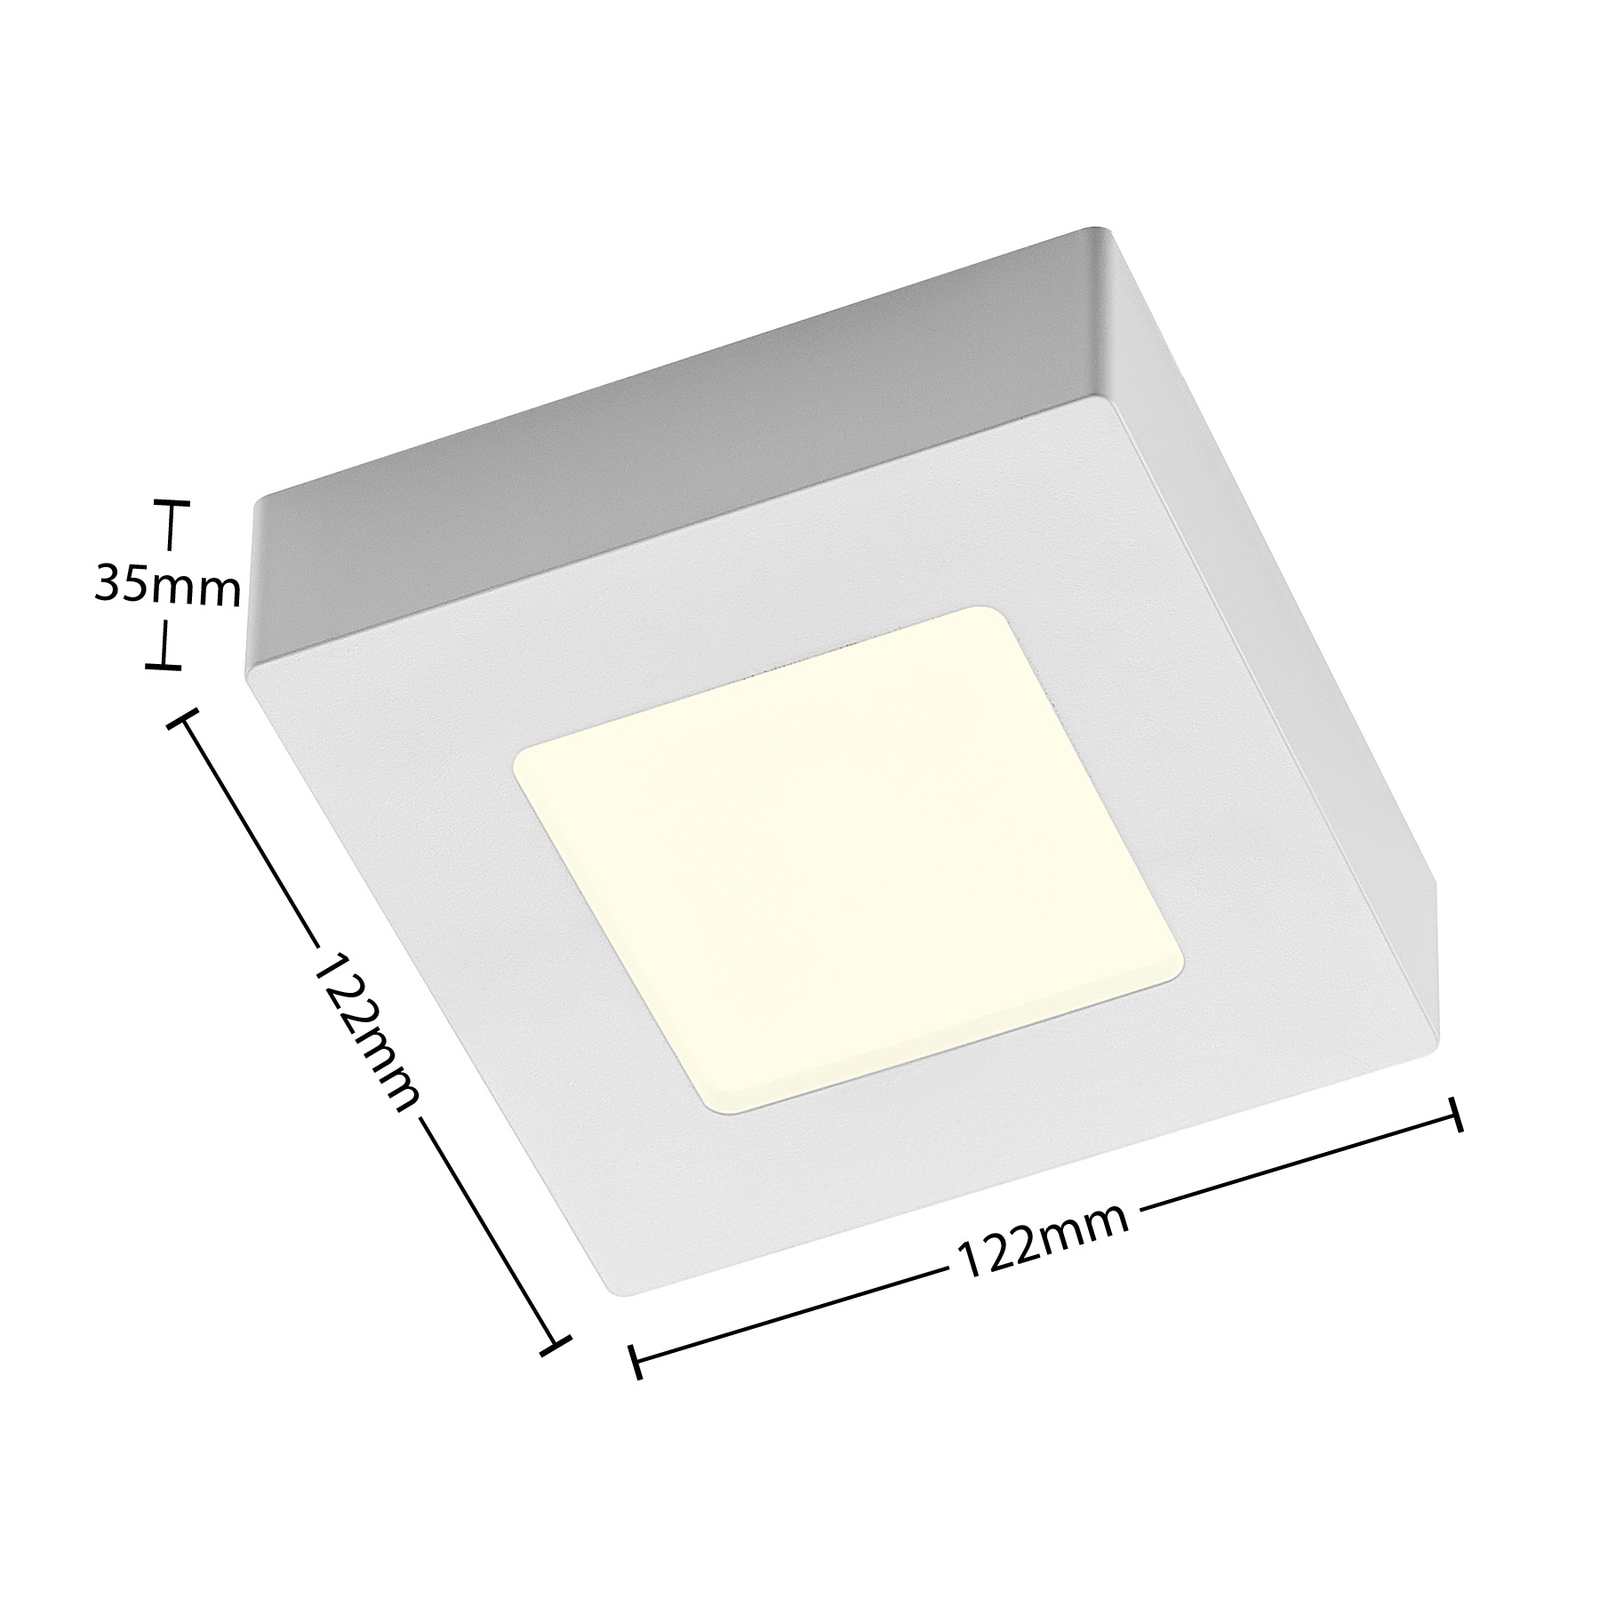 Prios LED stropna svetilka Alette, bela, 12,2 cm, z možnostjo zatemnitve